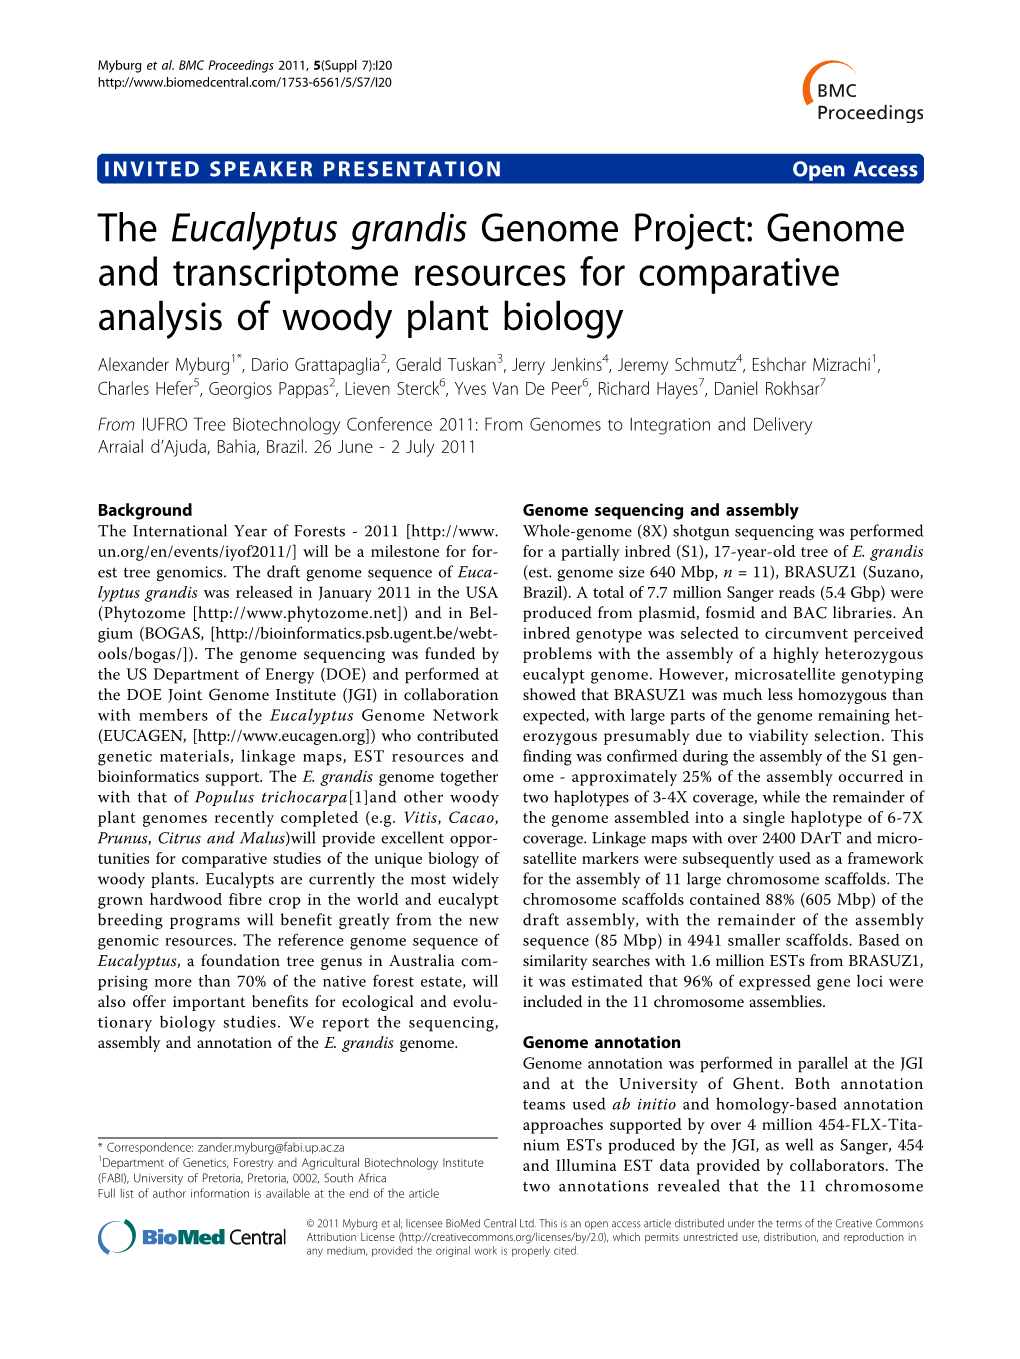 The Eucalyptus Grandis Genome Project: Genome and Transcriptome